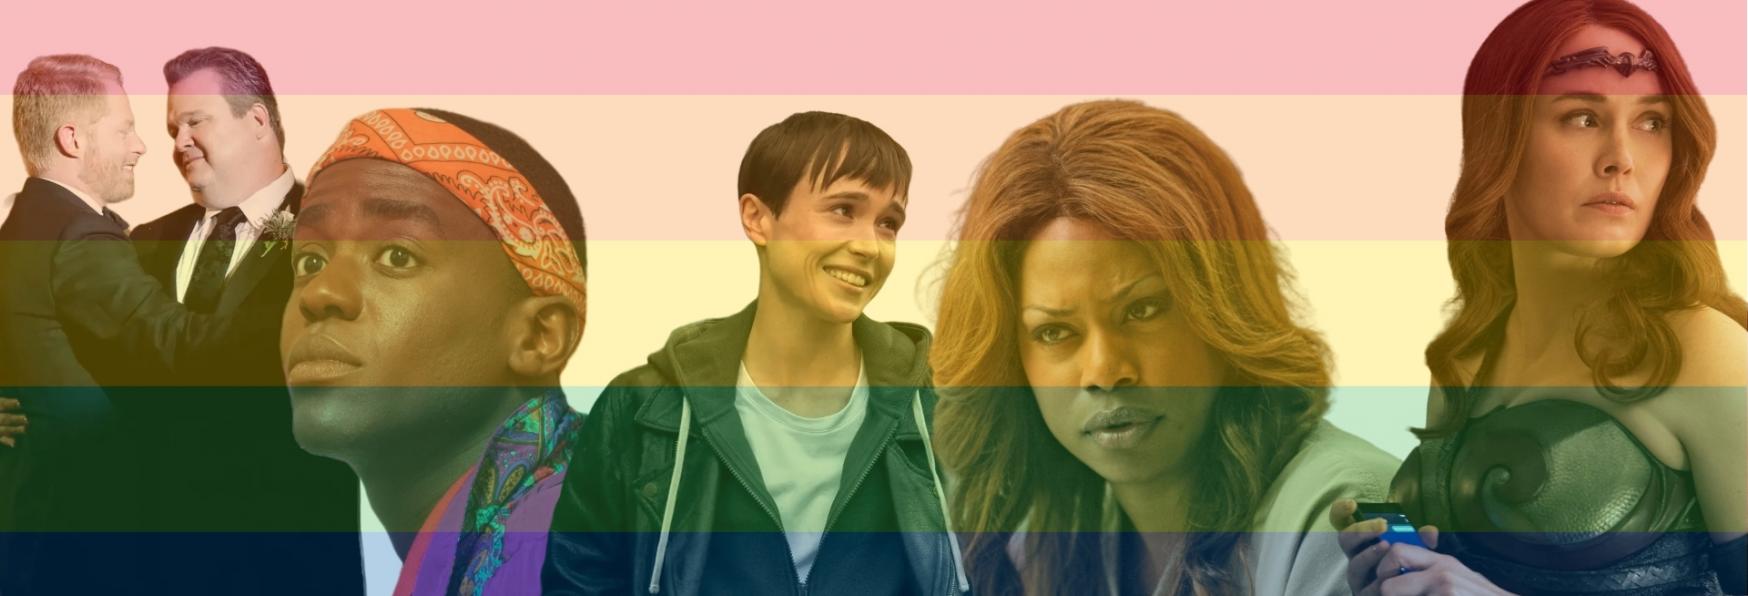 Da semplici Stereotipi a figure Complesse: l'evoluzione dei Personaggi Queer nelle Serie TV